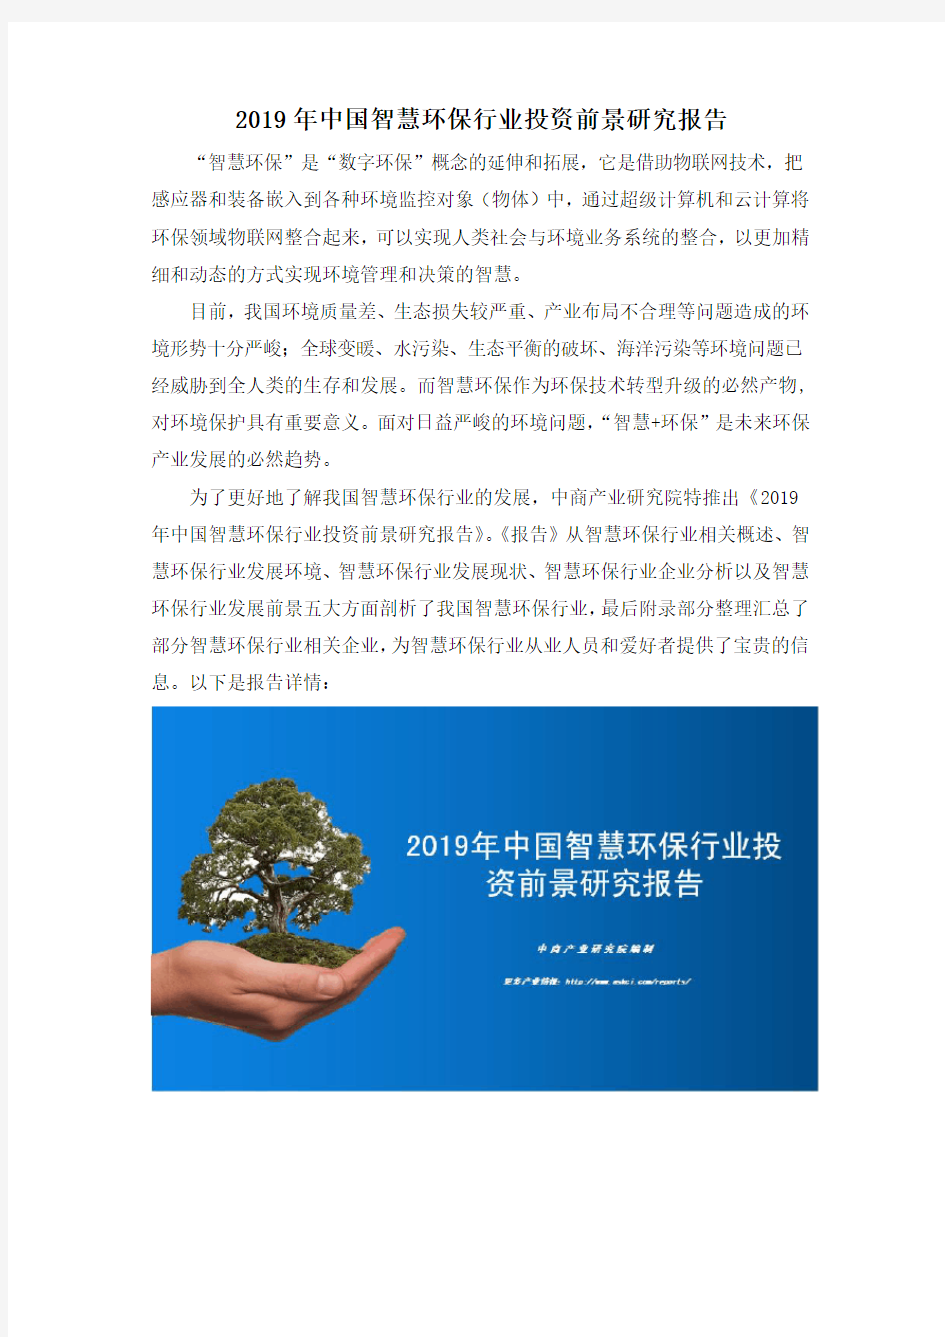 2019年中国智慧环保行业投资前景研究报告